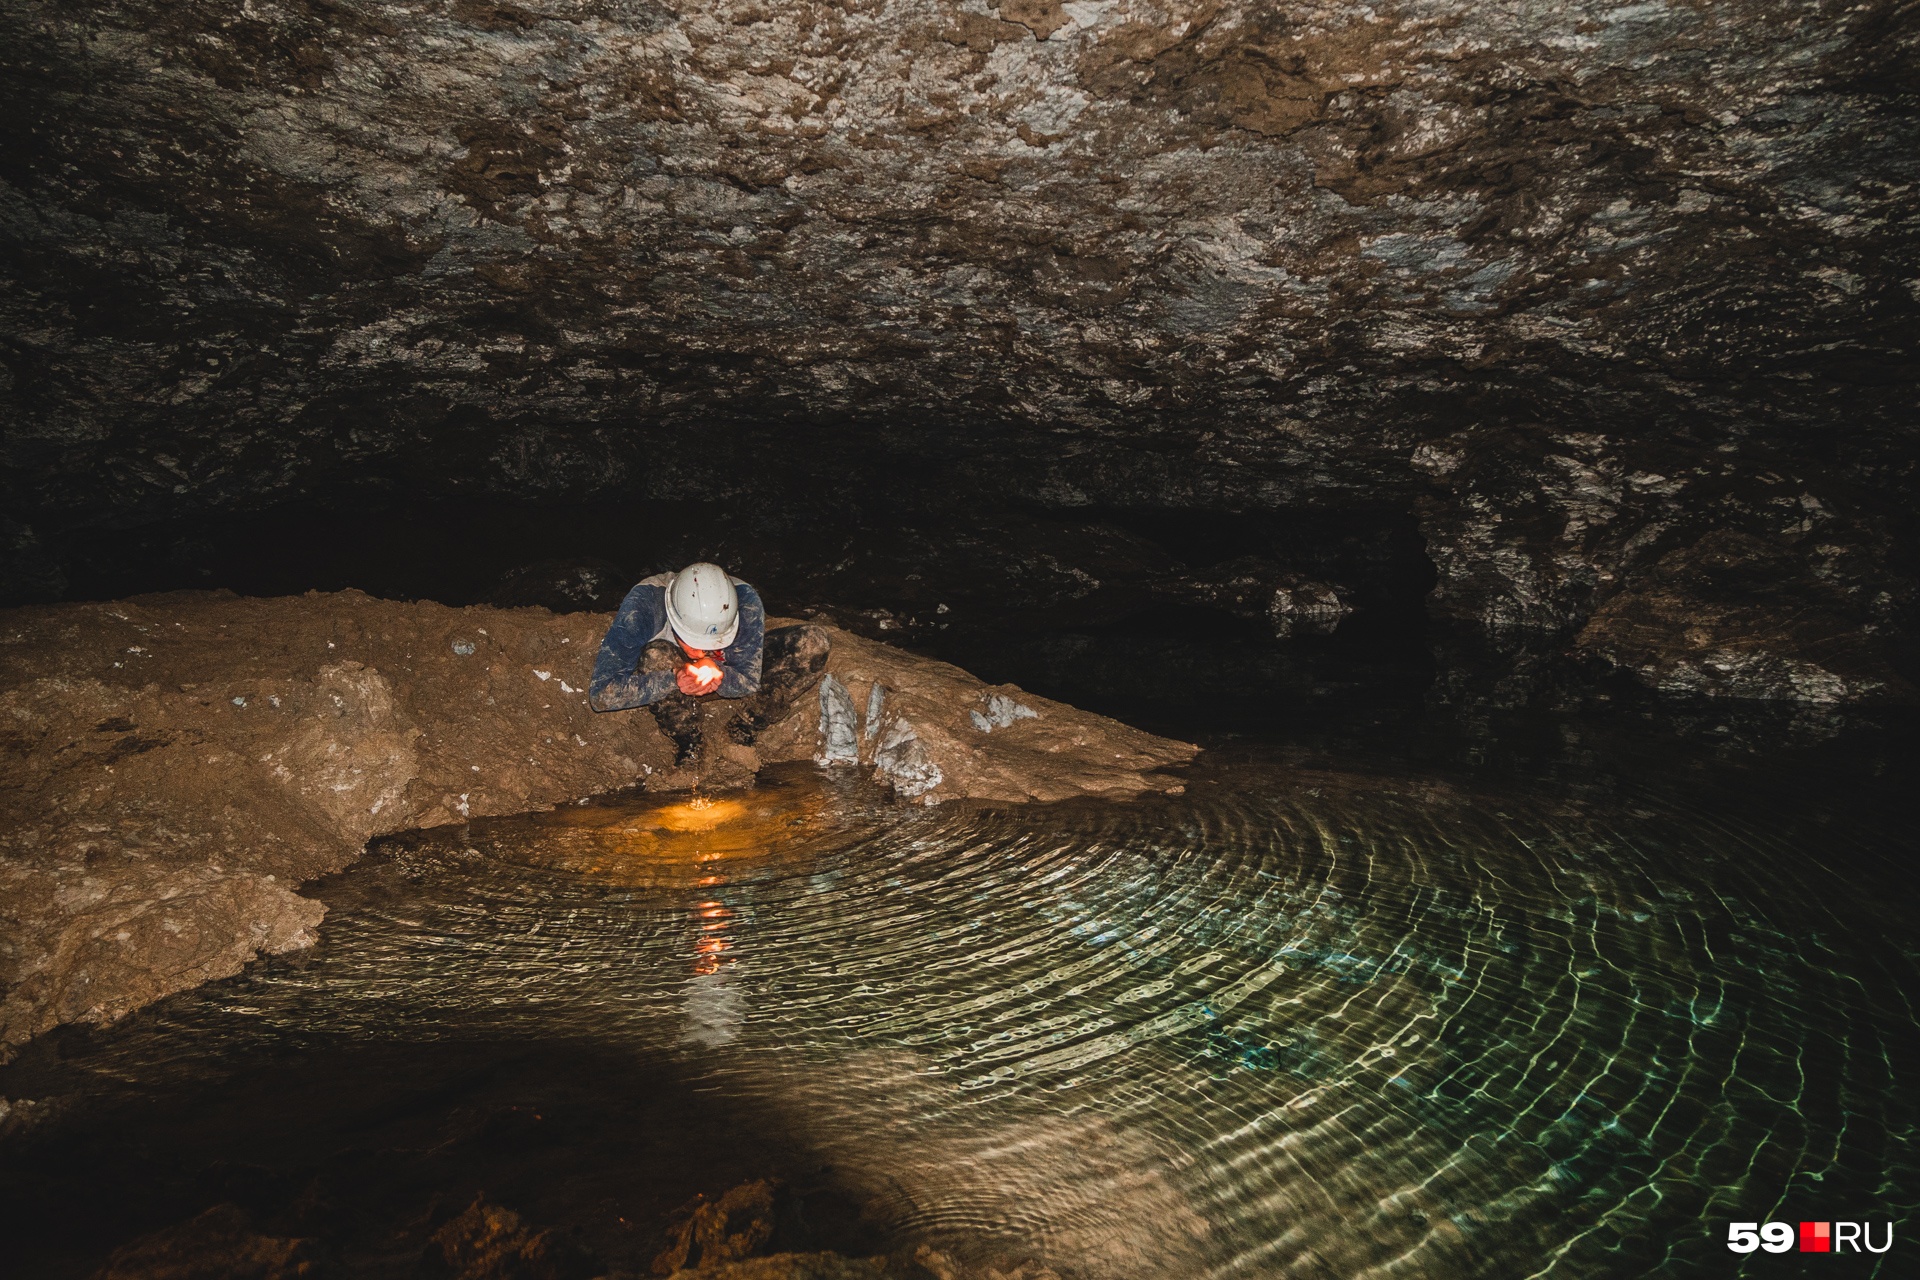 Вода в пещере очень чистая и вкусная